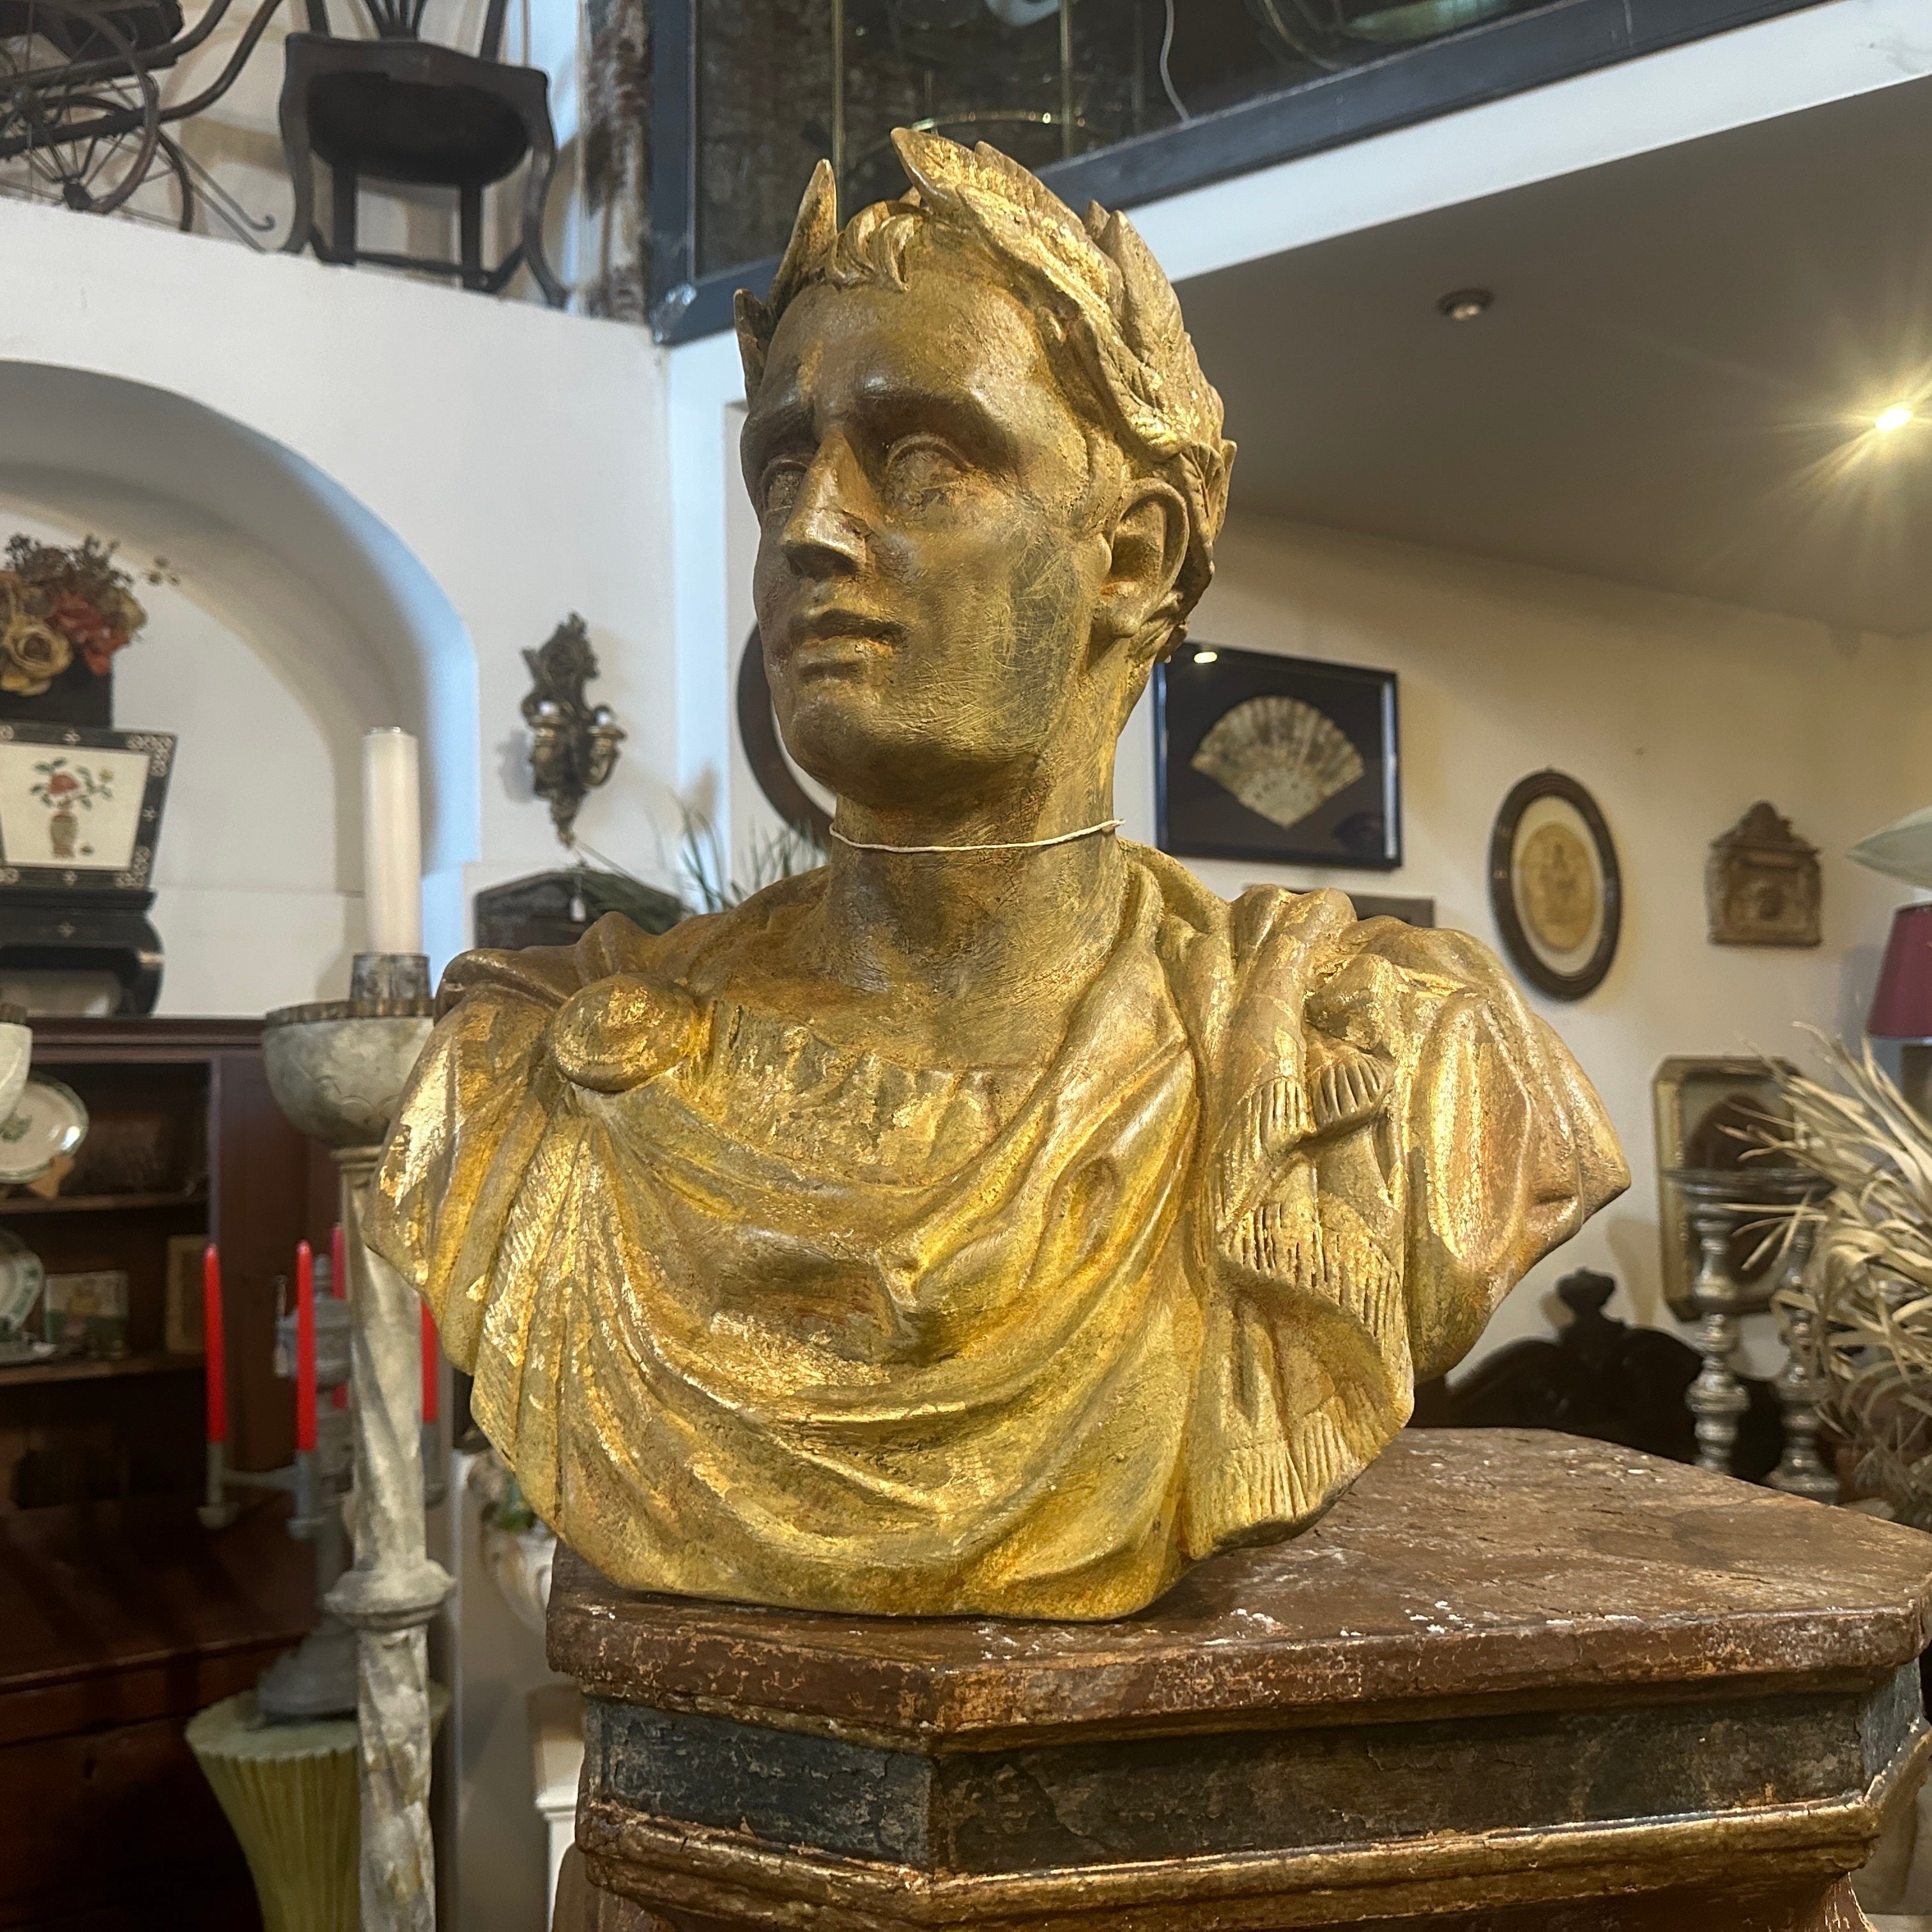 Buste en plâtre patiné à l'or de Giulio Cesar provenant de la Diptych Fine Artsca d'une académie sicilienne des beaux-arts. Les plâtres étaient patinés de différentes manières, celui-ci a été réalisé avec de l'or, de l'ambre et du marron pour ce